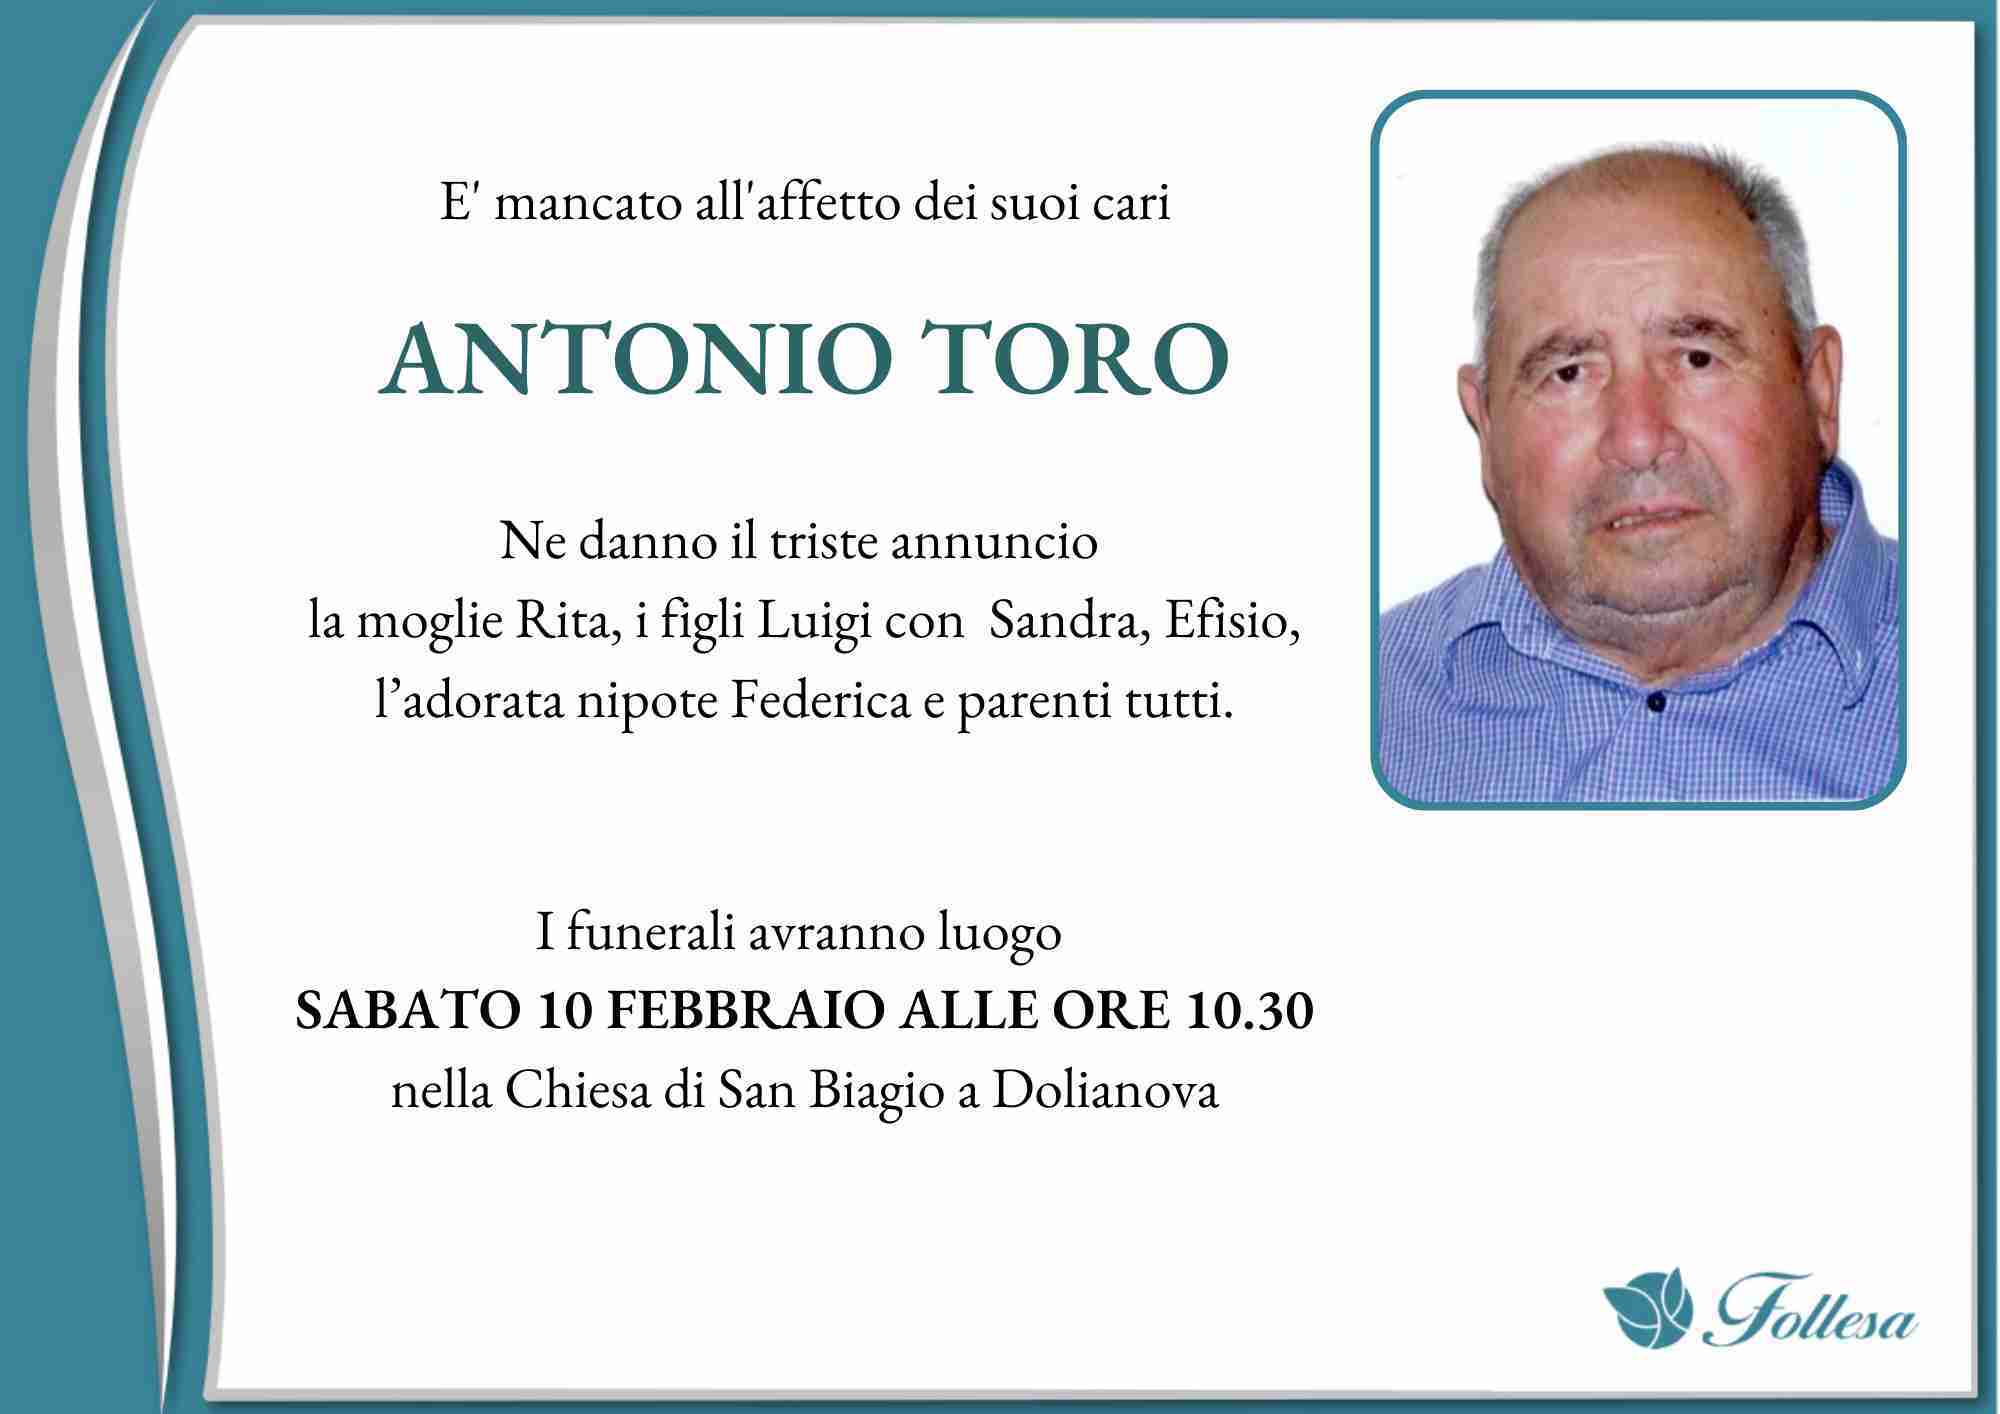 Antonio Toro